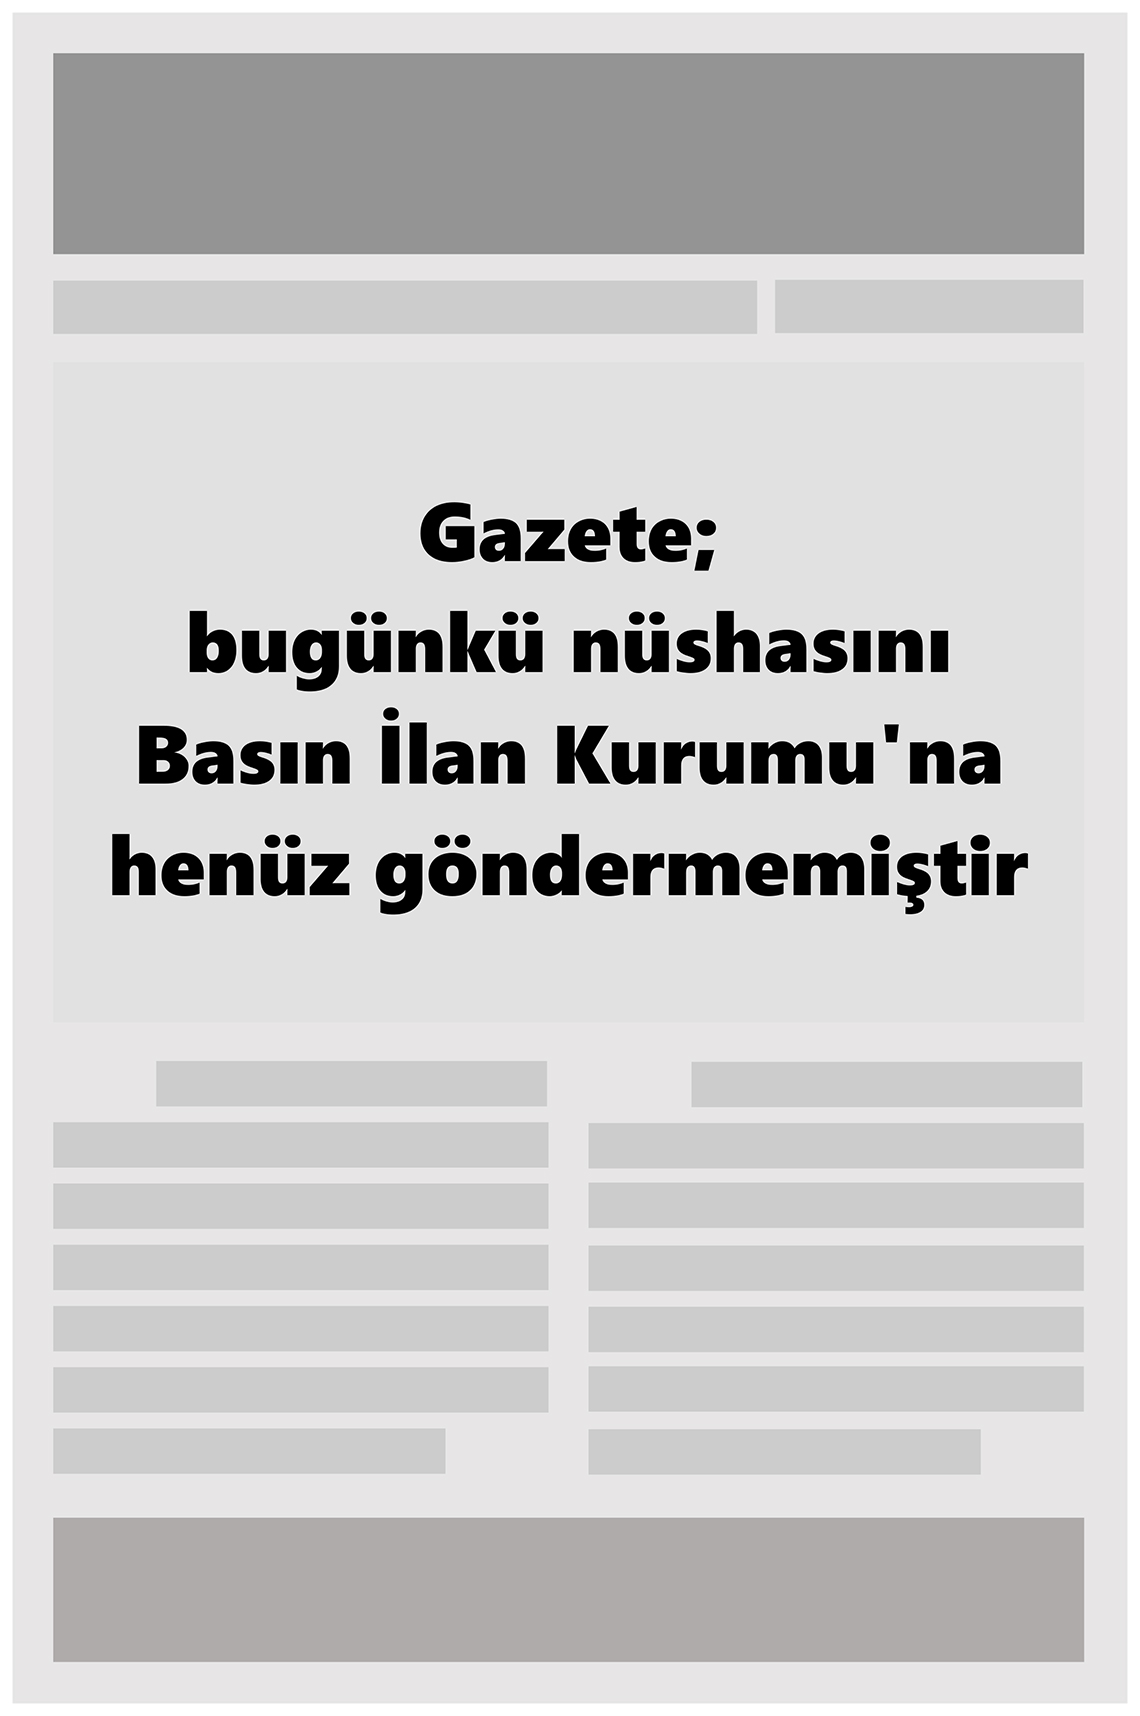 27 Kasım 2022 Giresun İleri Gazete Manşeti